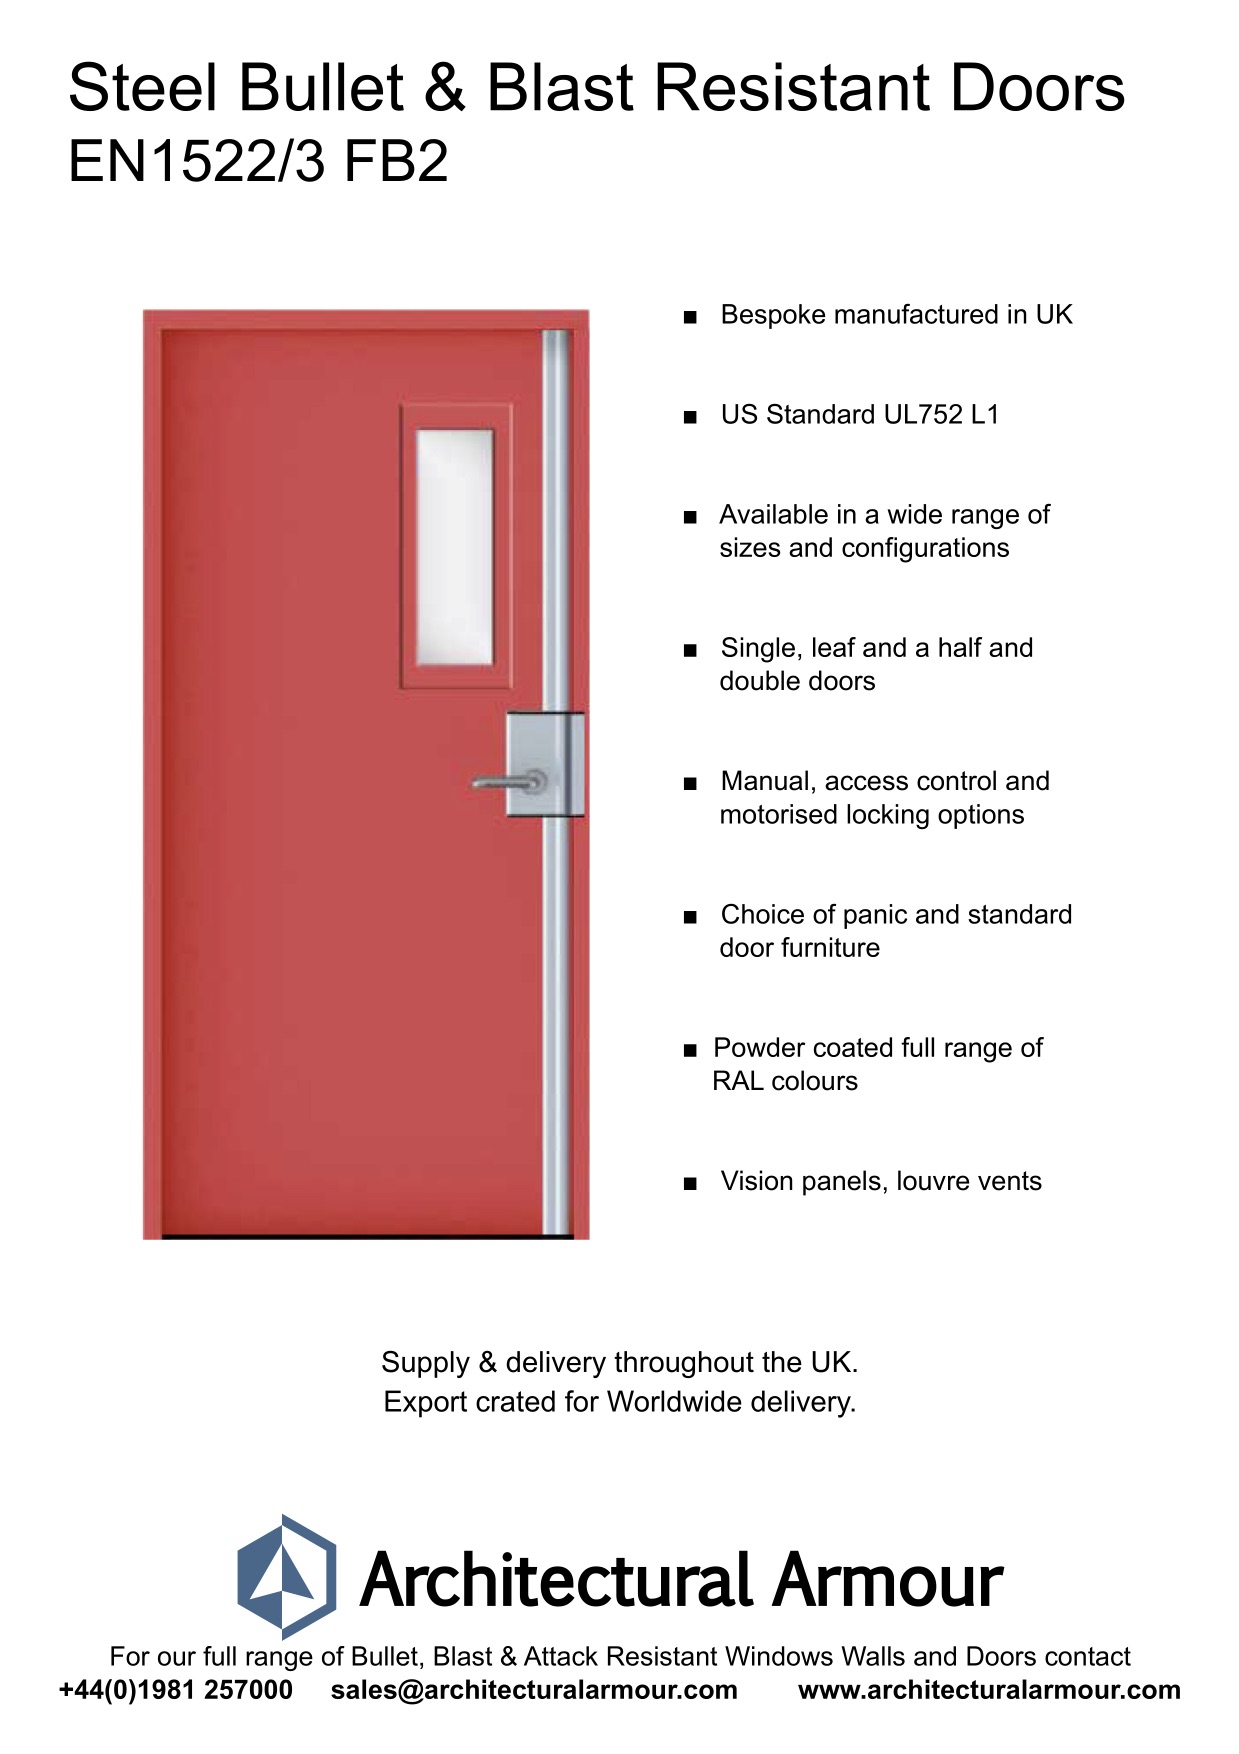 EN1522-3-FB2-Single-Slim-Vision-Panel-Blast-and-Bullet-Resistant-Steel-Door